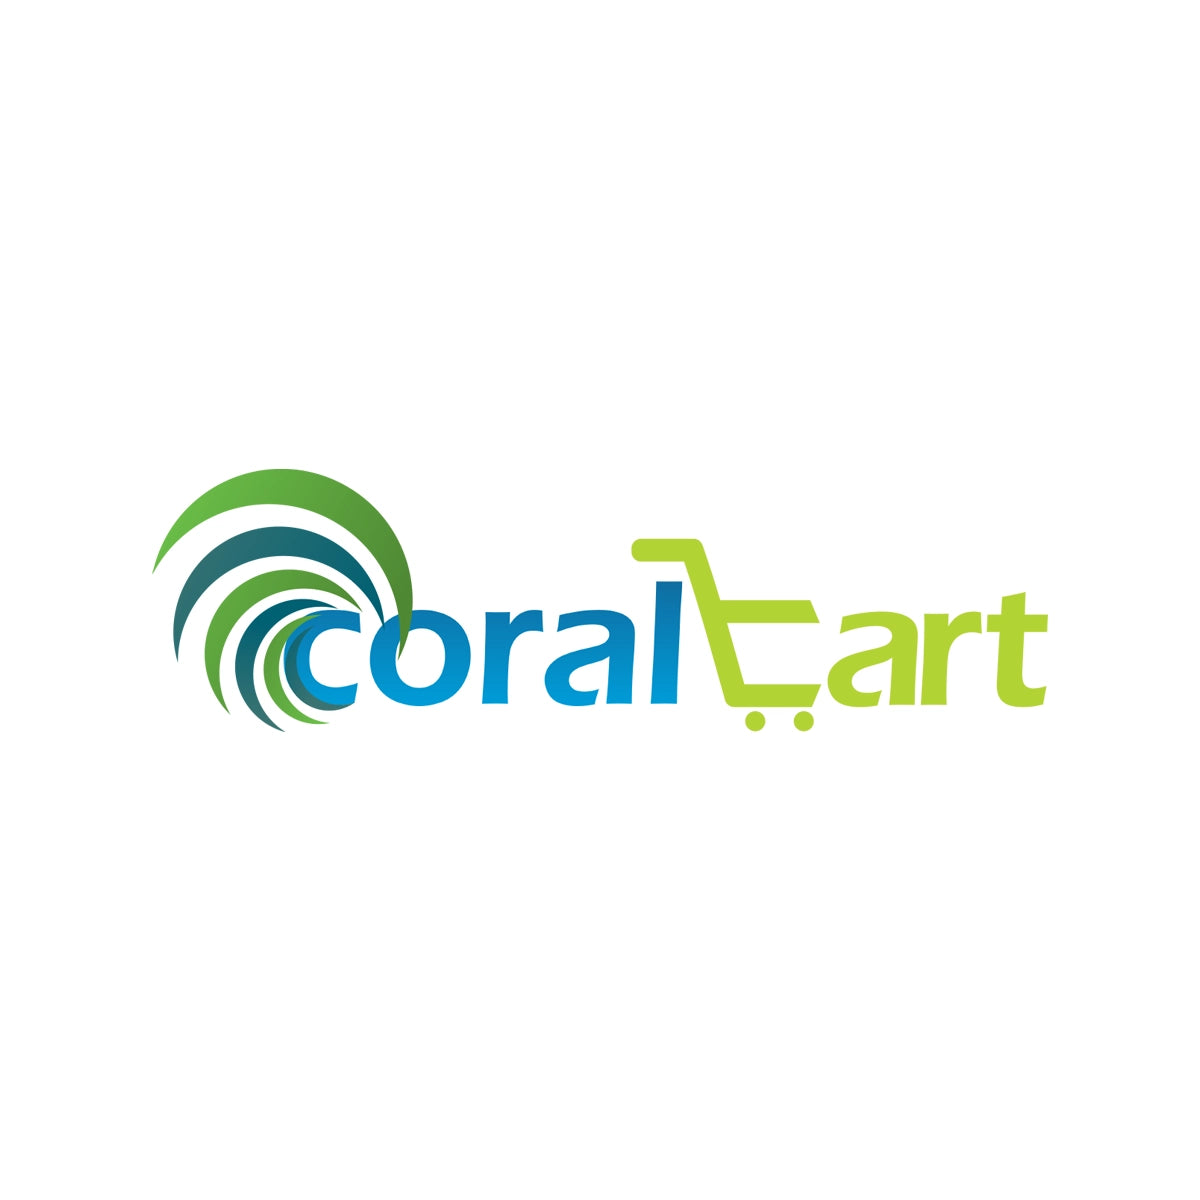 coralcart.com